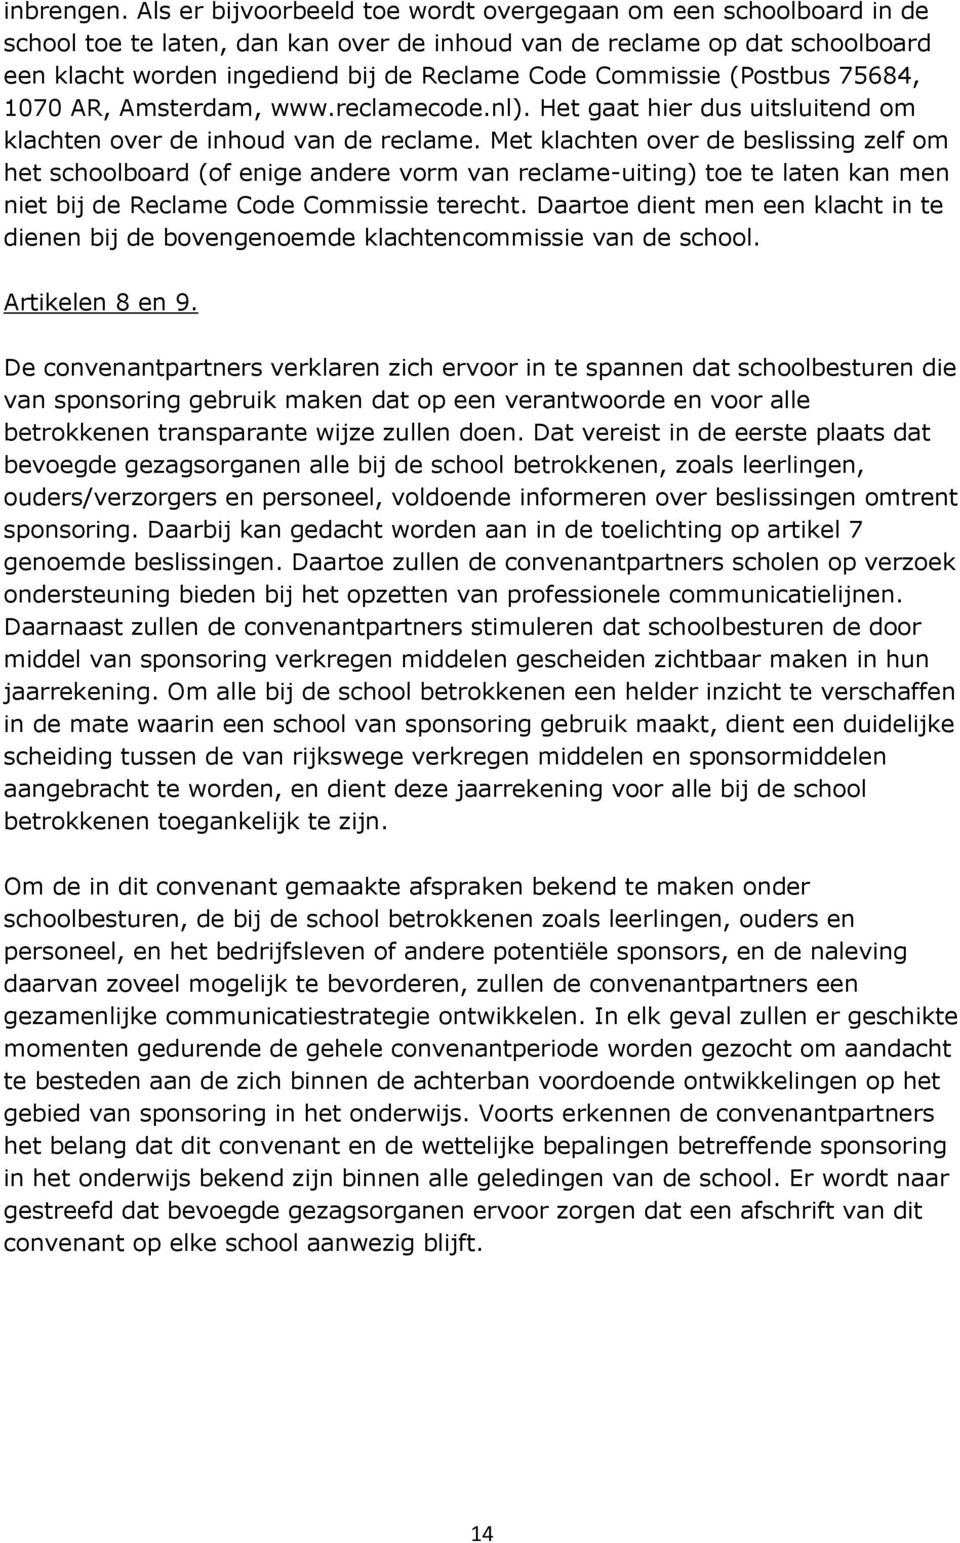 Commissie (Postbus 75684, 1070 AR, Amsterdam, www.reclamecode.nl). Het gaat hier dus uitsluitend om klachten over de inhoud van de reclame.